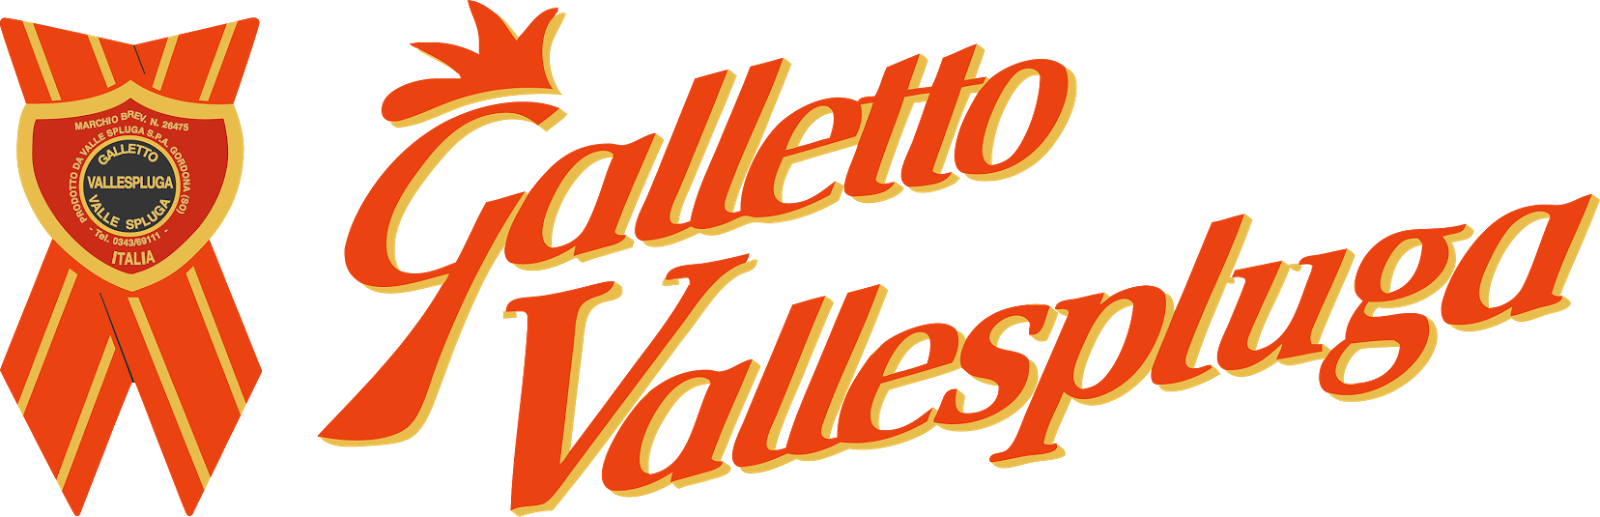 Galletto Vallespluga